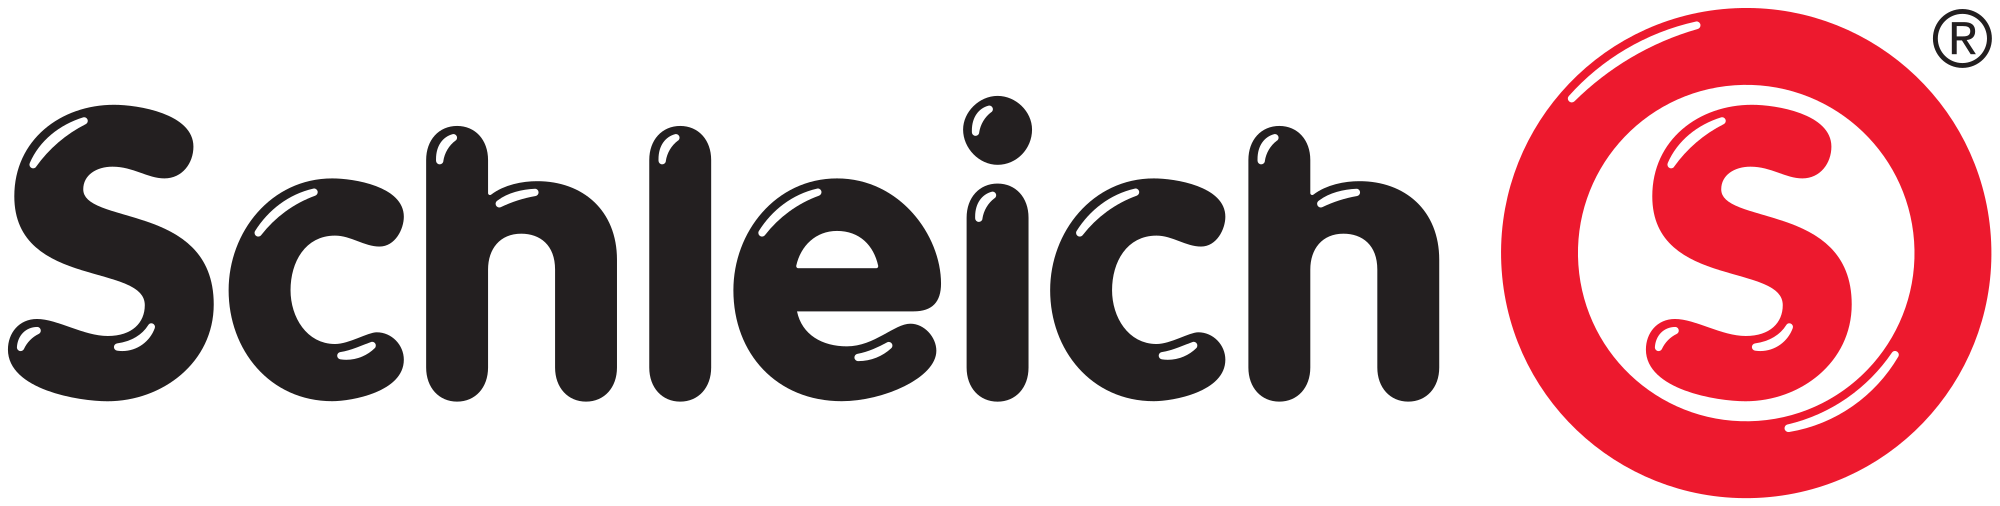 Schleich Logo.png